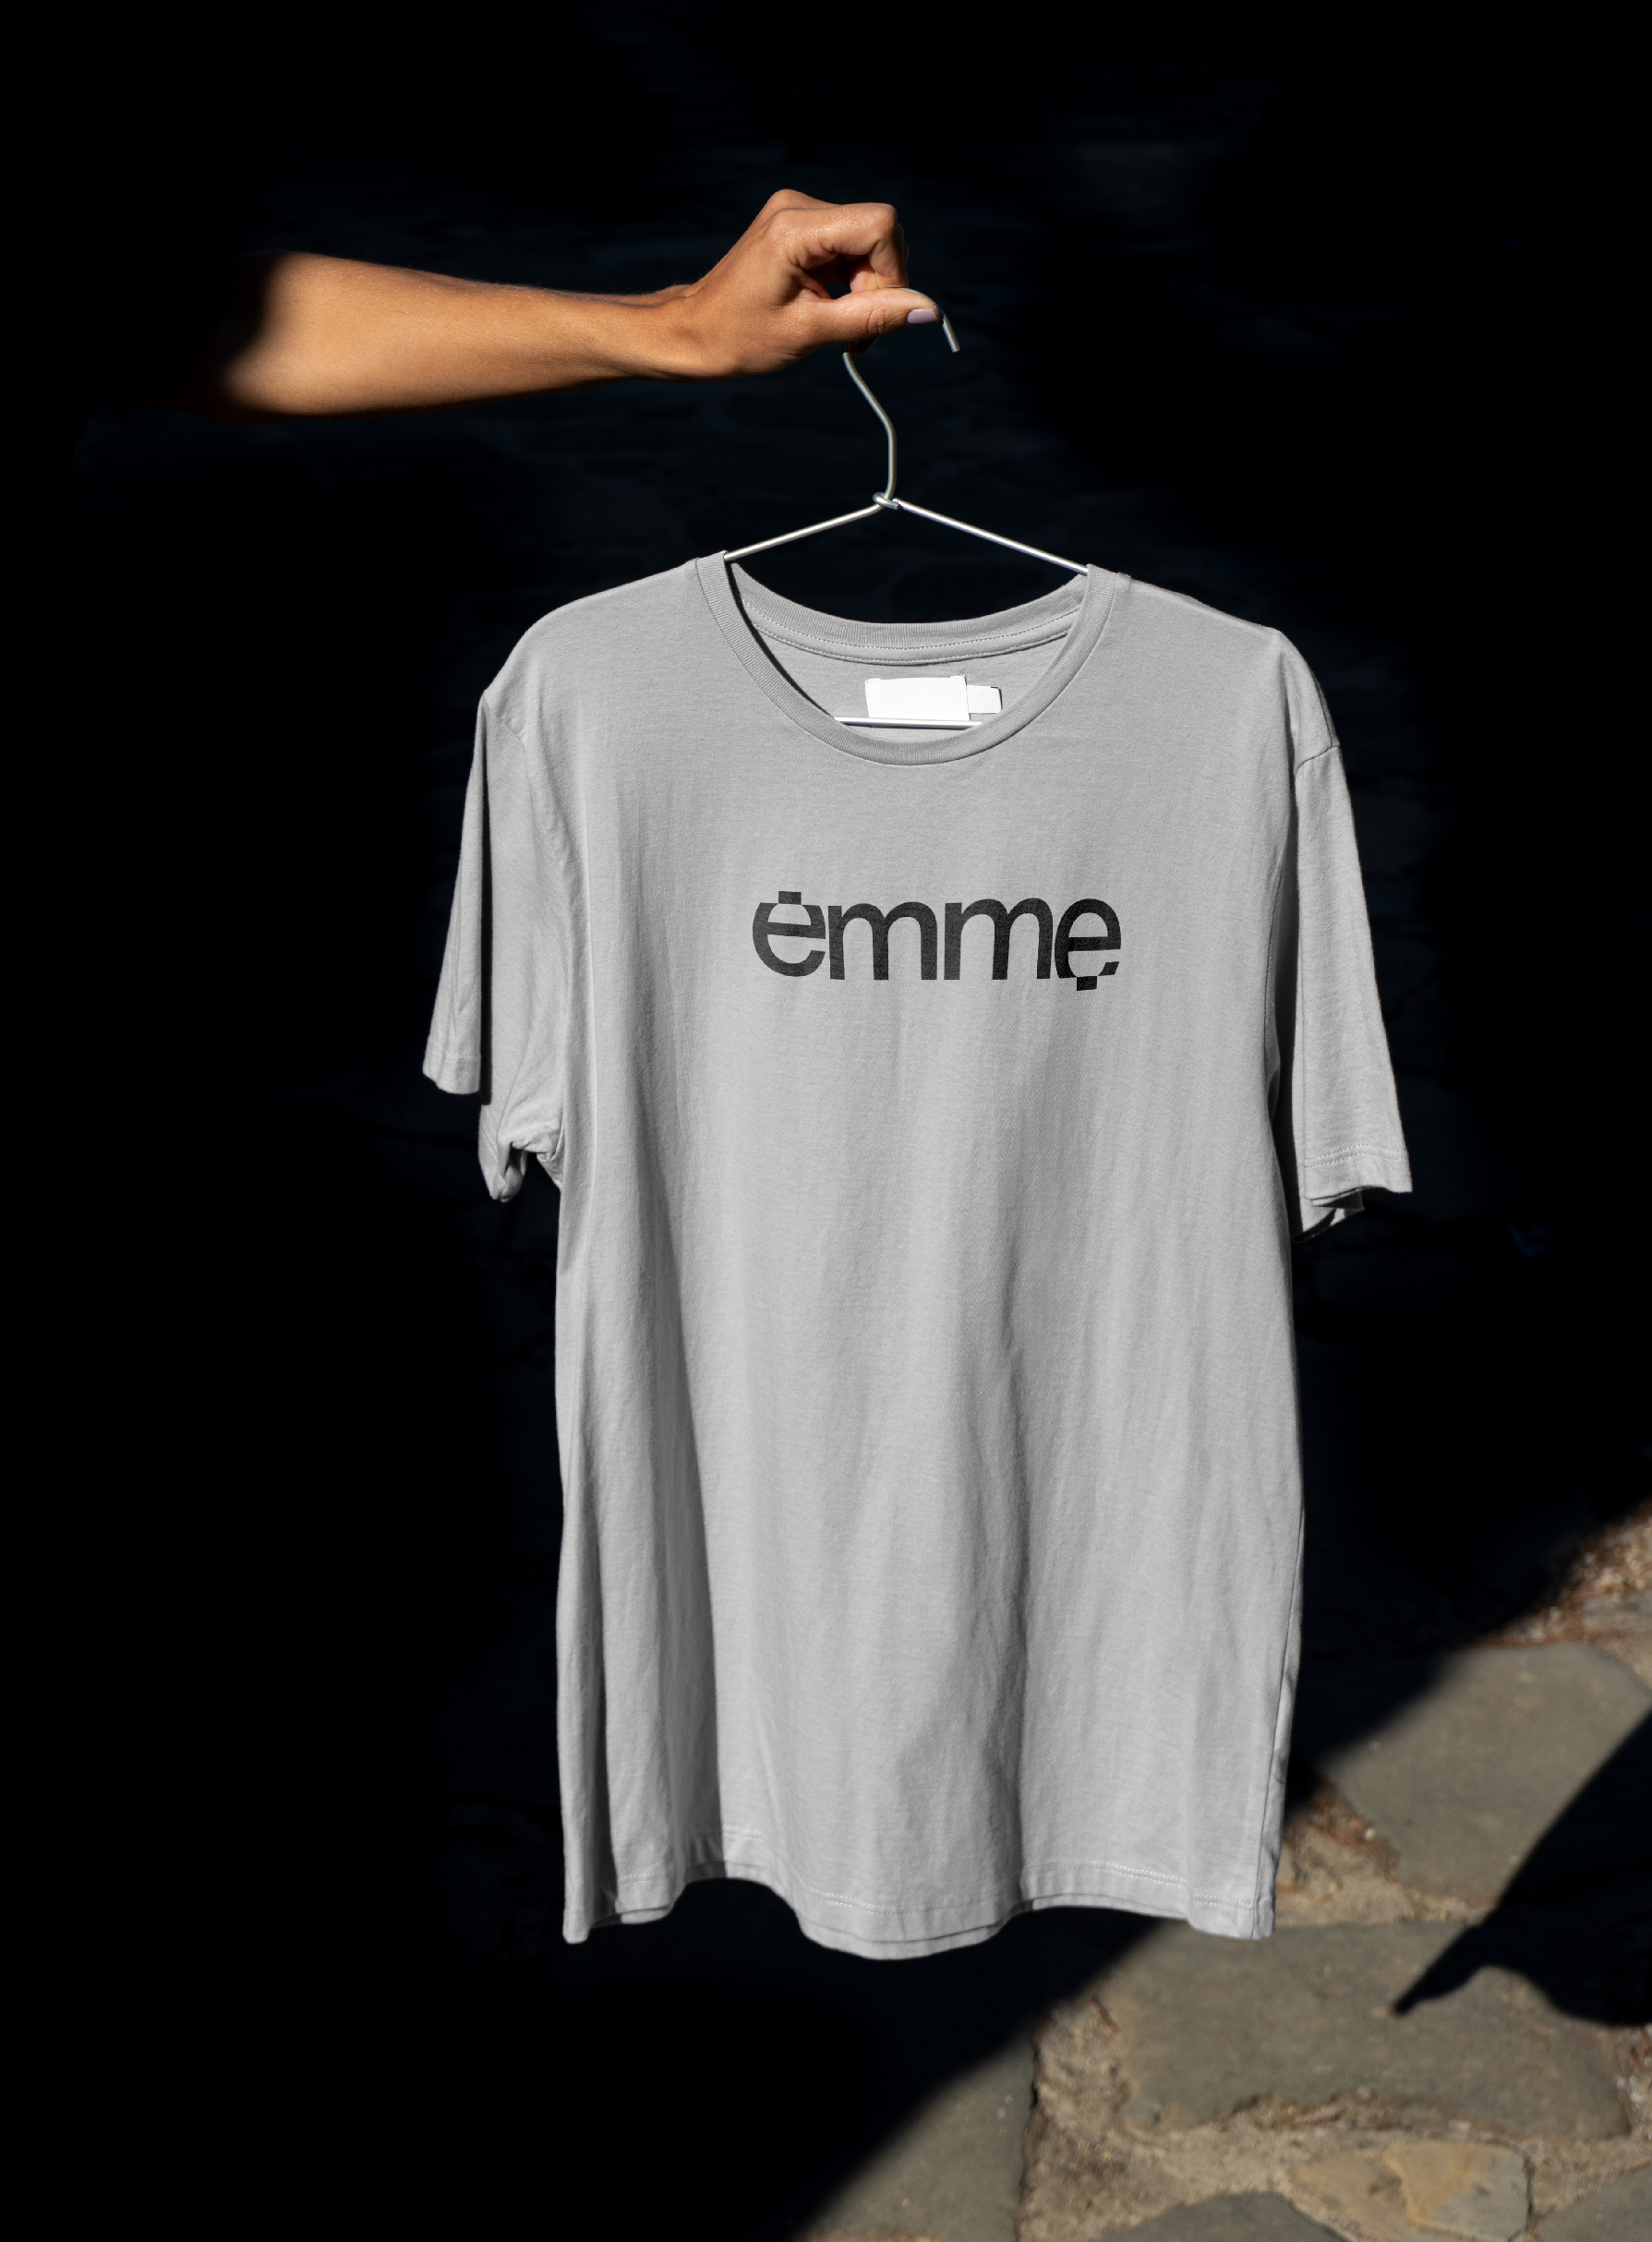 emme t-shirt